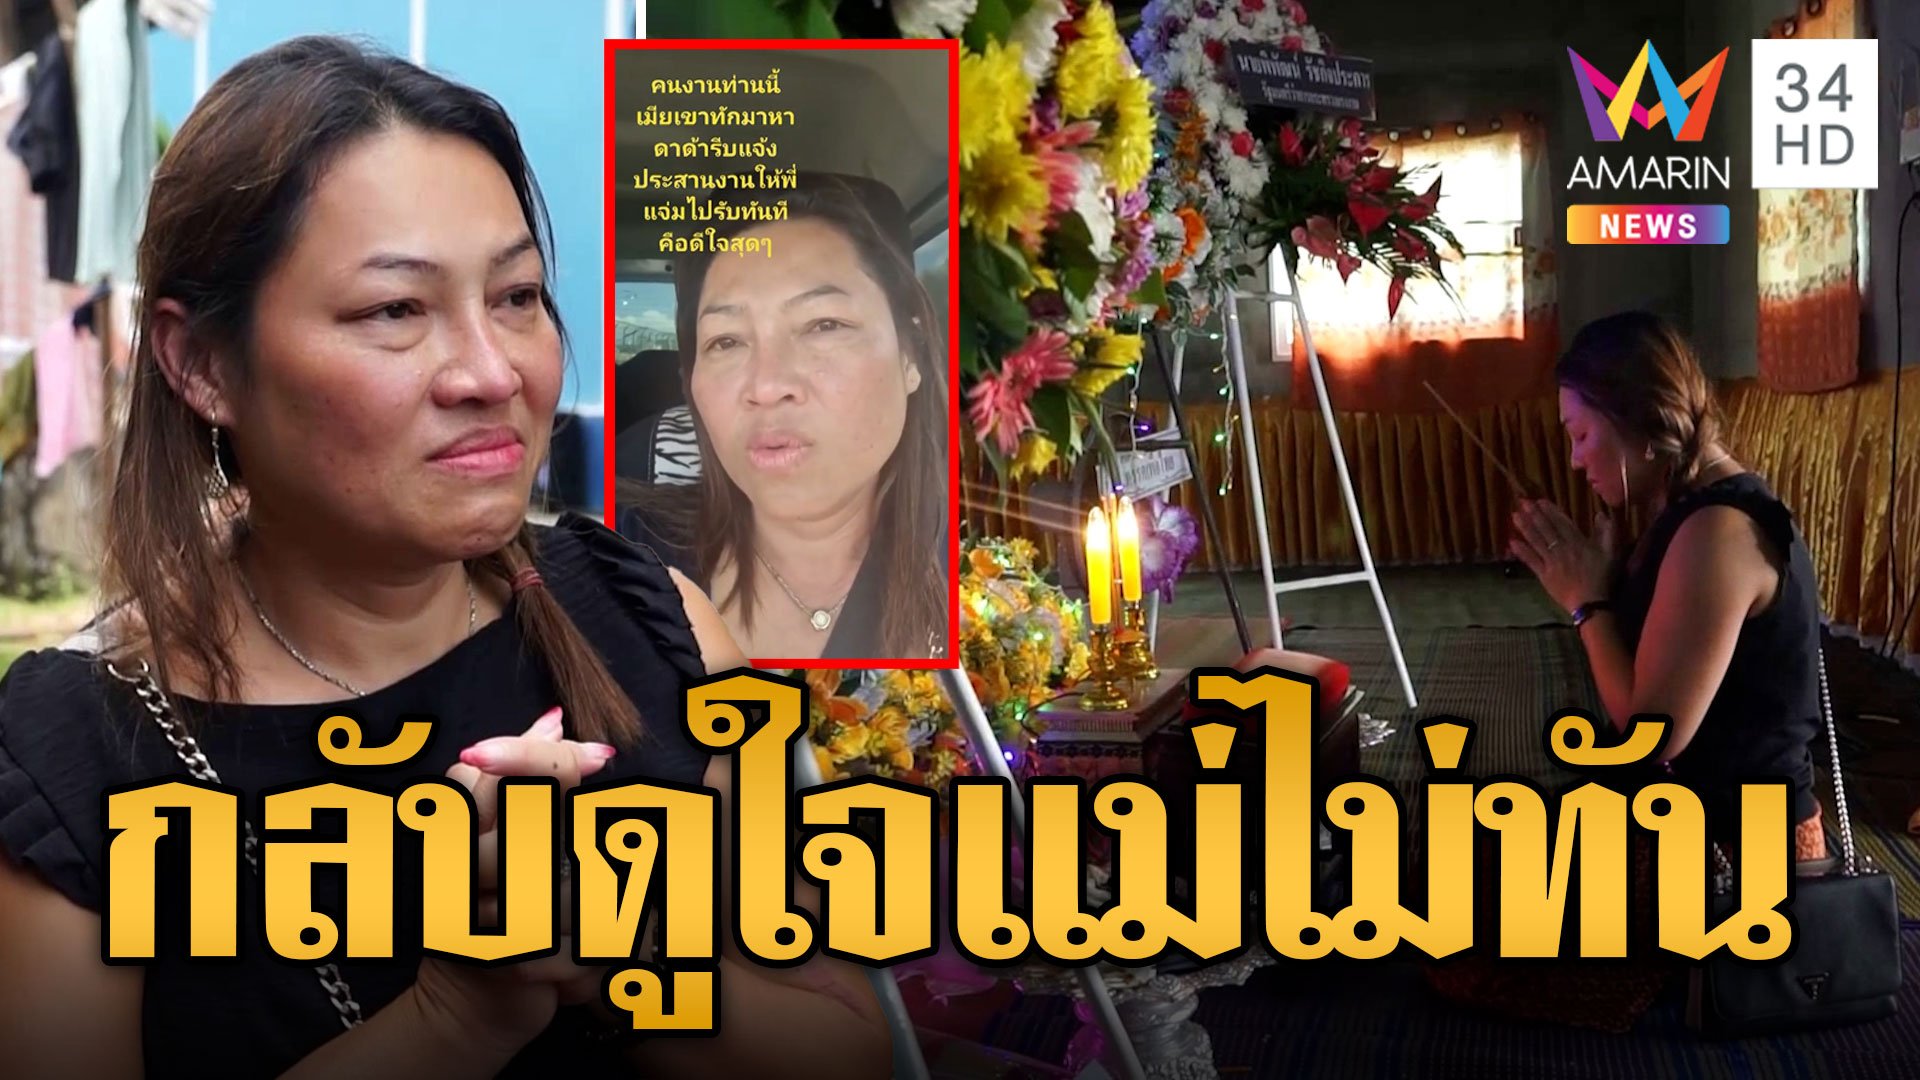 "แม่แจ๋ม" วีรสตรีหญิงช่วยคนไทยเศร้า กลับมาดูใจแม่วินาทีสุดท้ายไม่ทัน ทำได้แค่บอกลาหน้าโลง | ข่าวอรุณอมรินทร์ | 18 ต.ค. 66 | AMARIN TVHD34